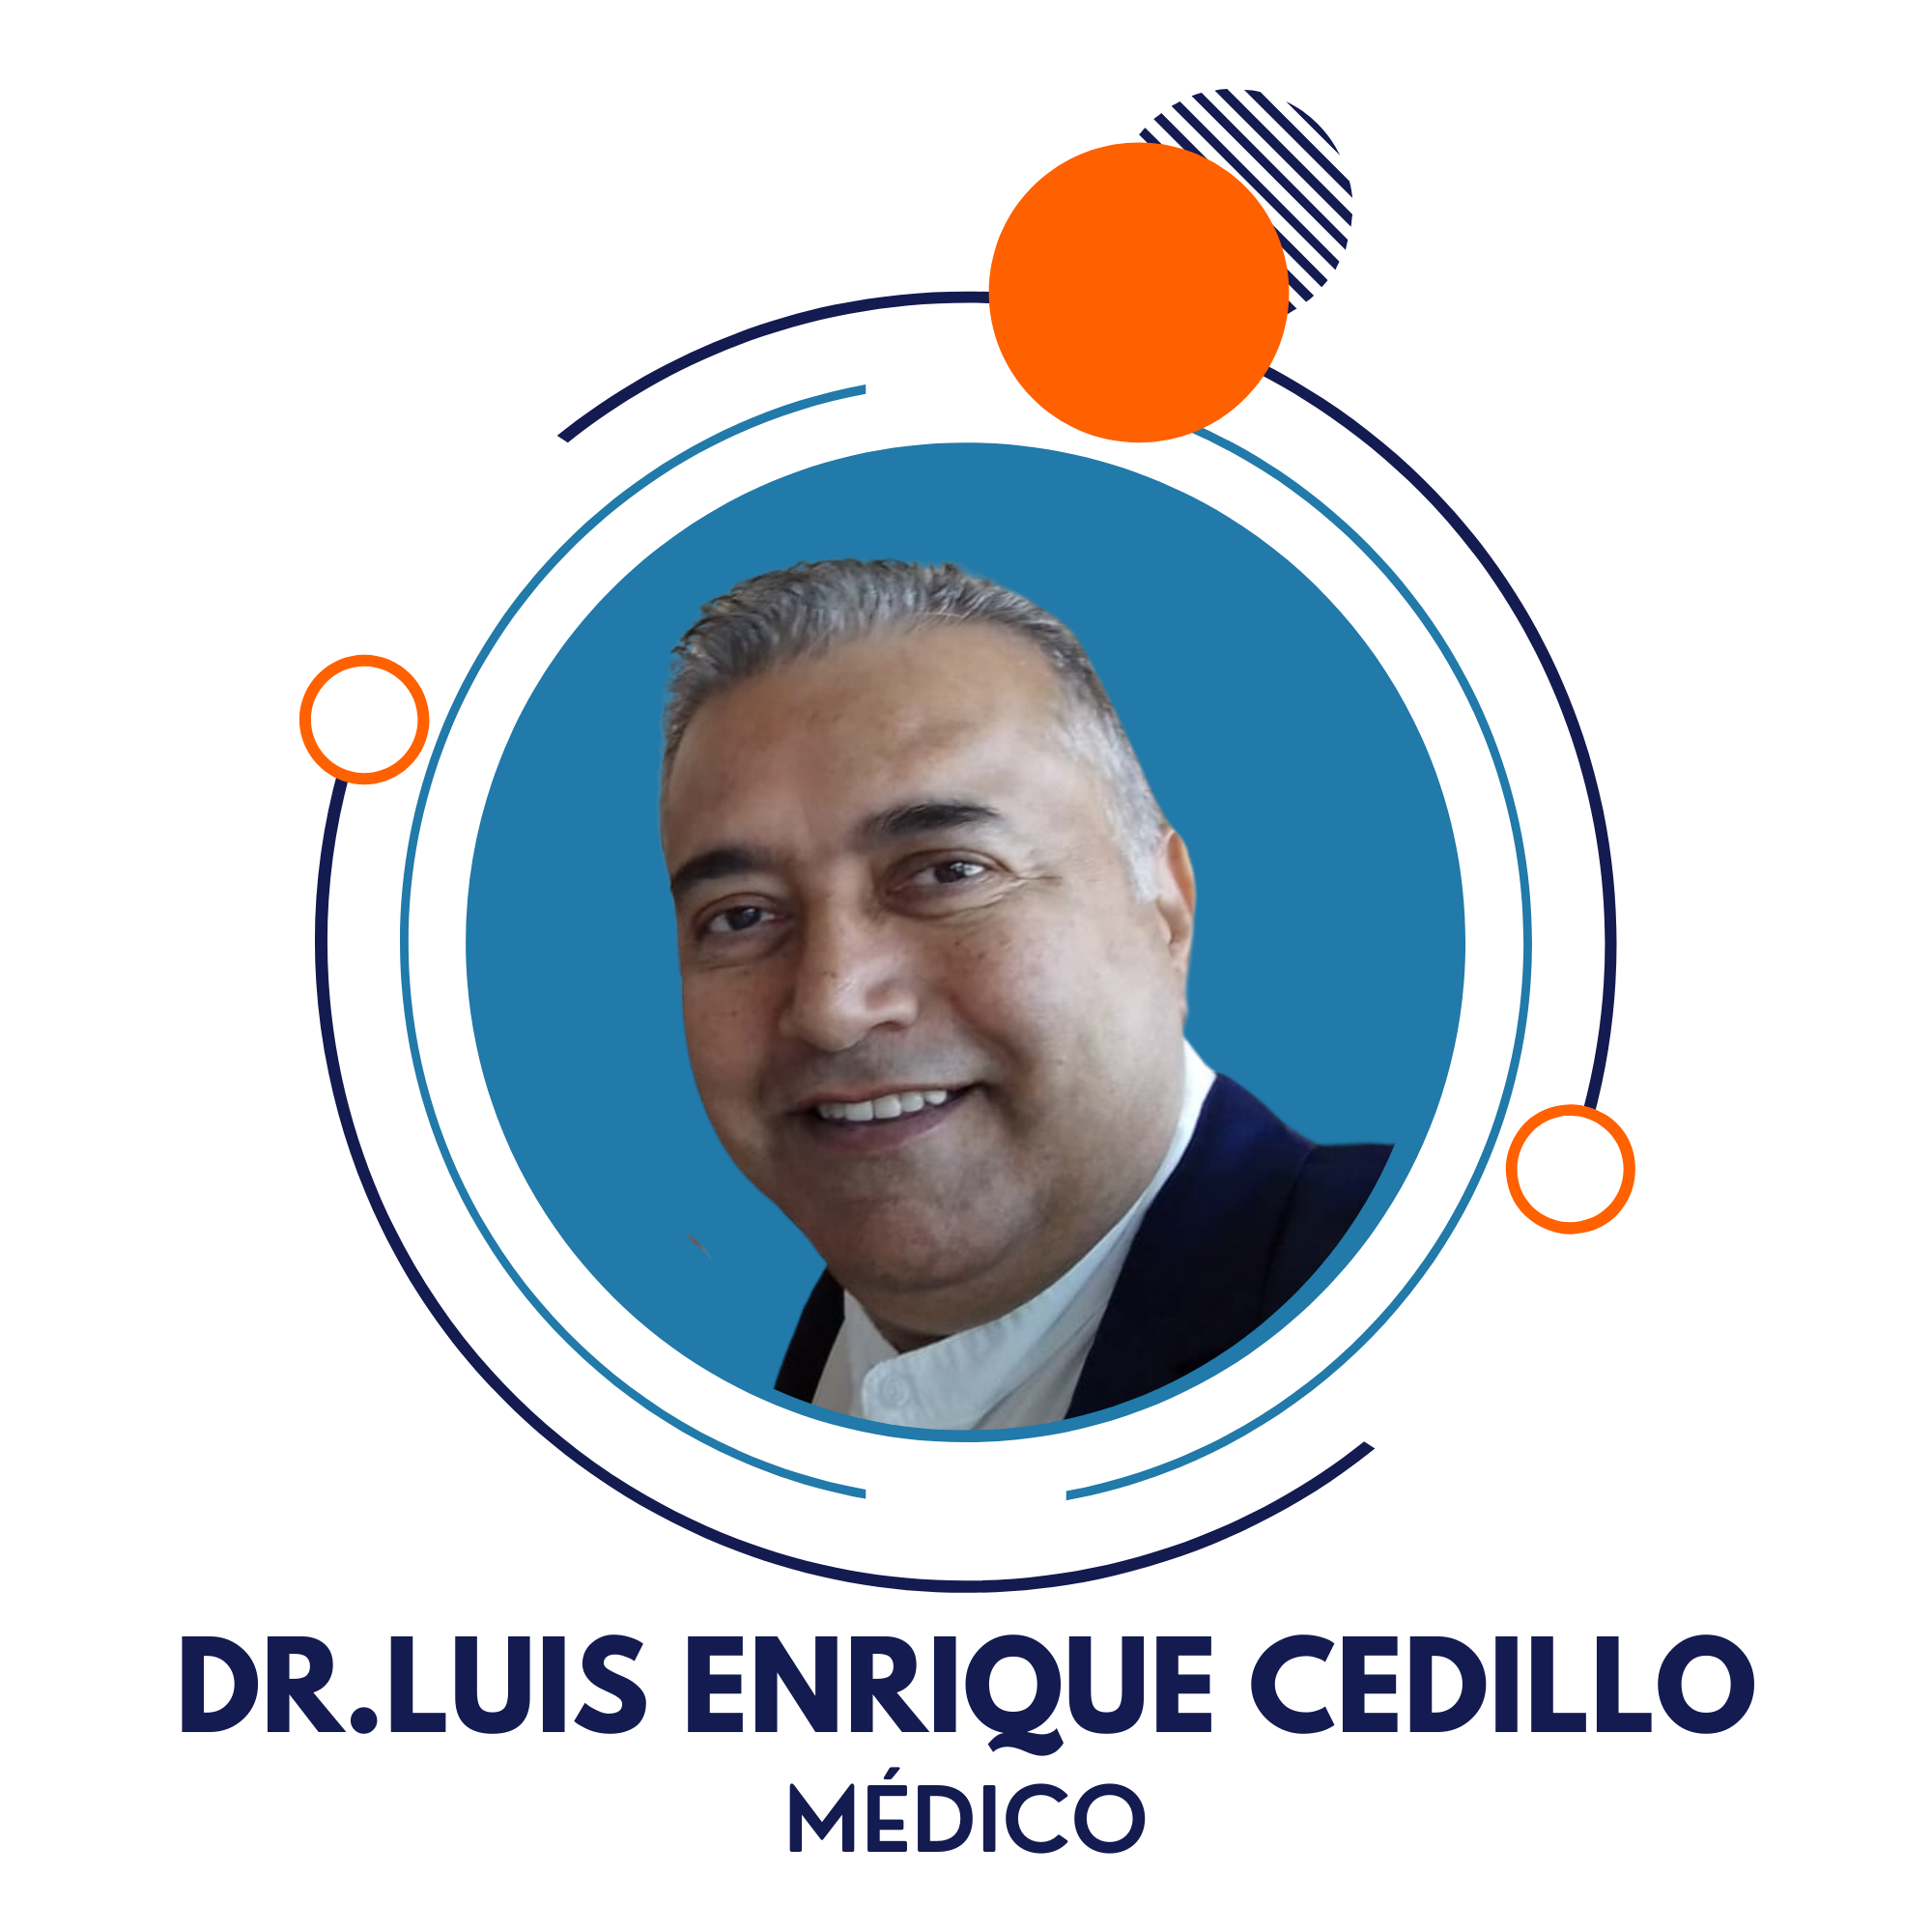 DR.LUIS ENRIQUE CEDILLO